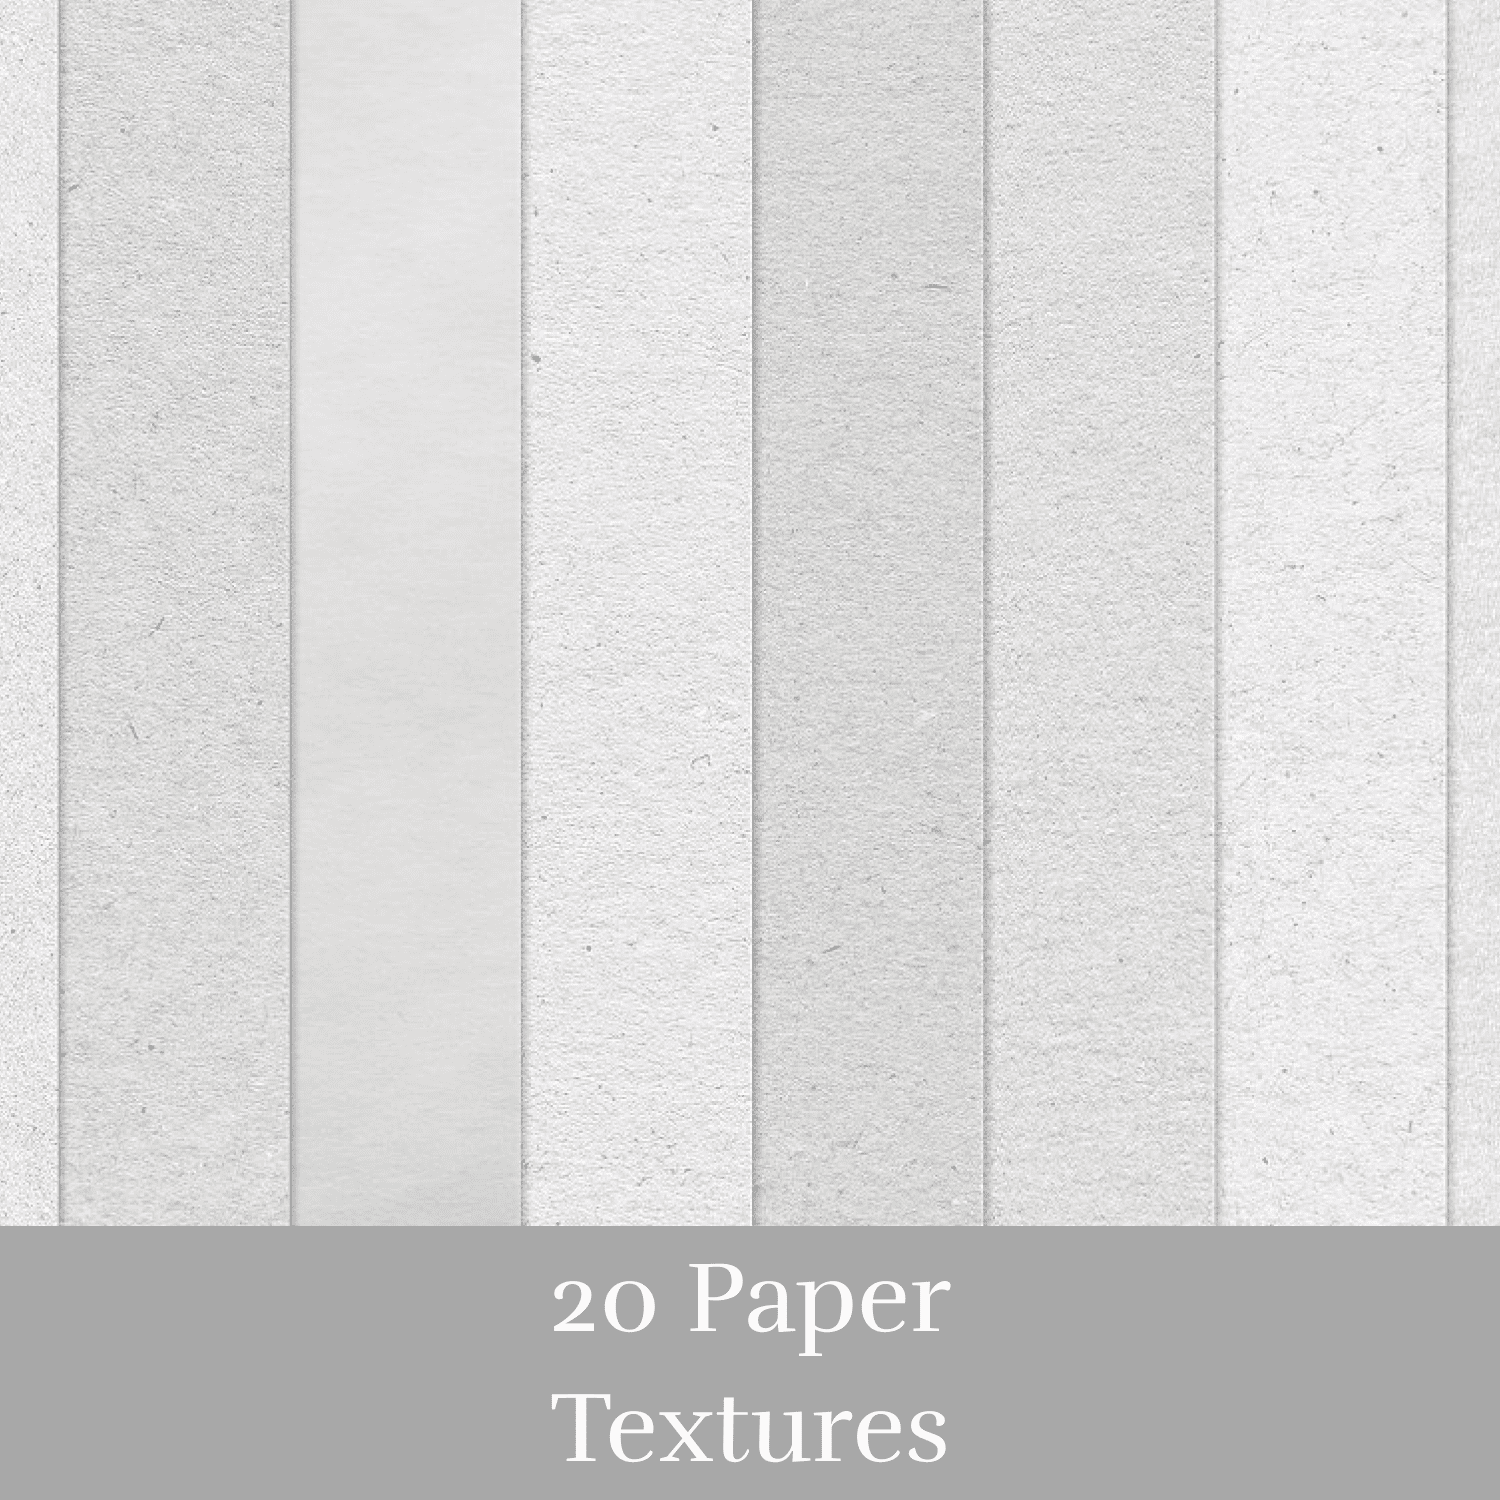 20 Paper Textures.